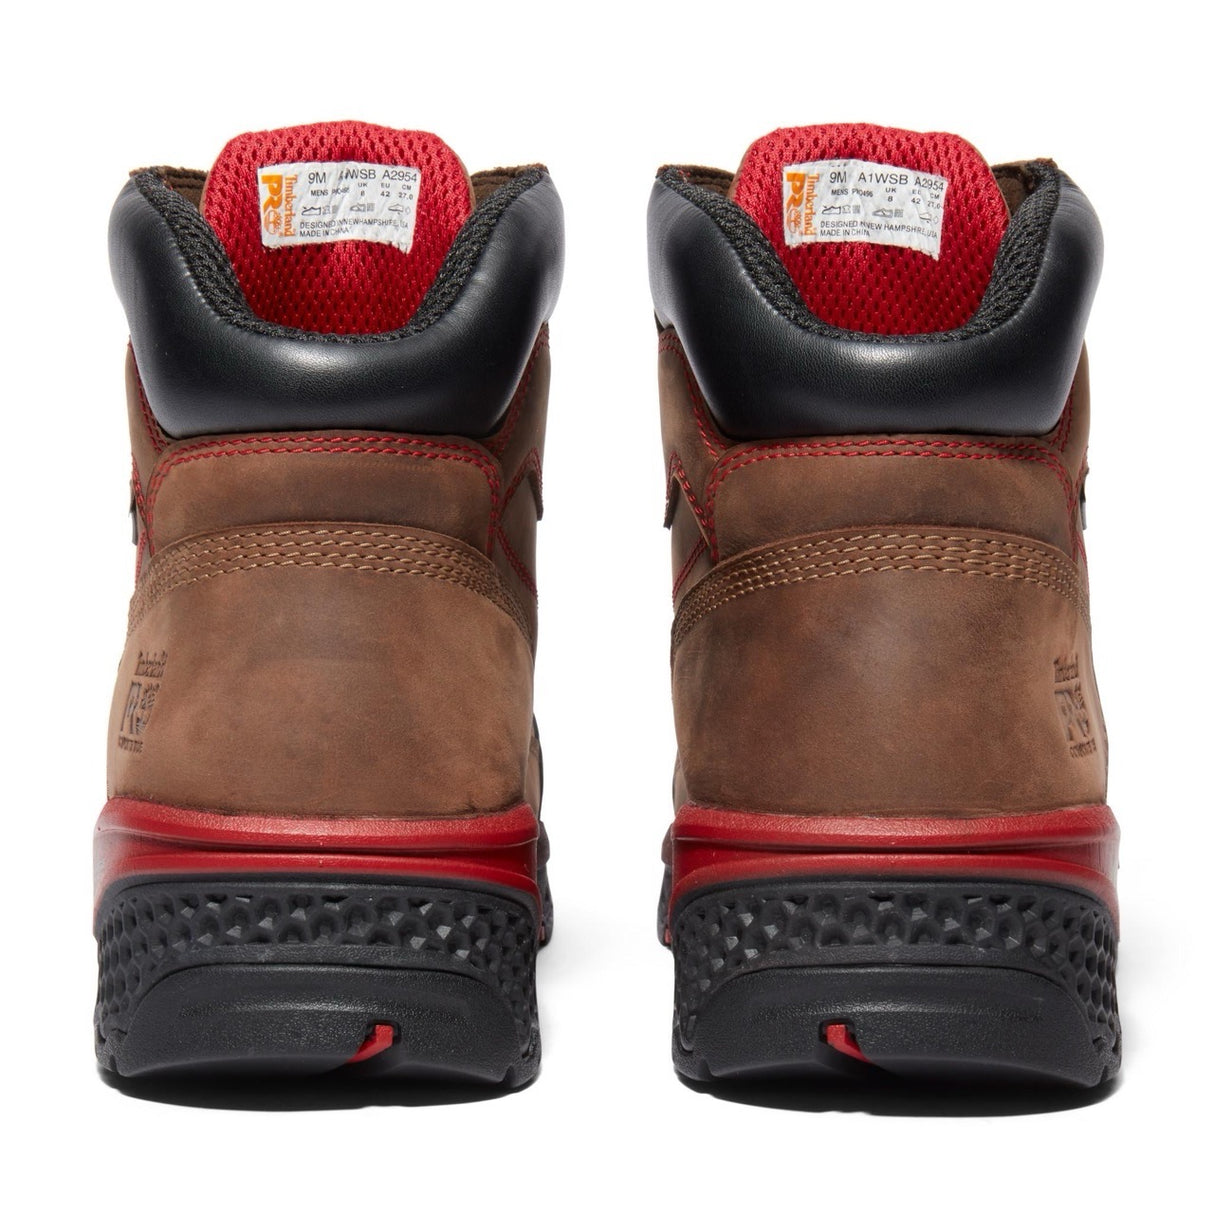 Booshog Men's Composite-Toe Boots PR Waterproof